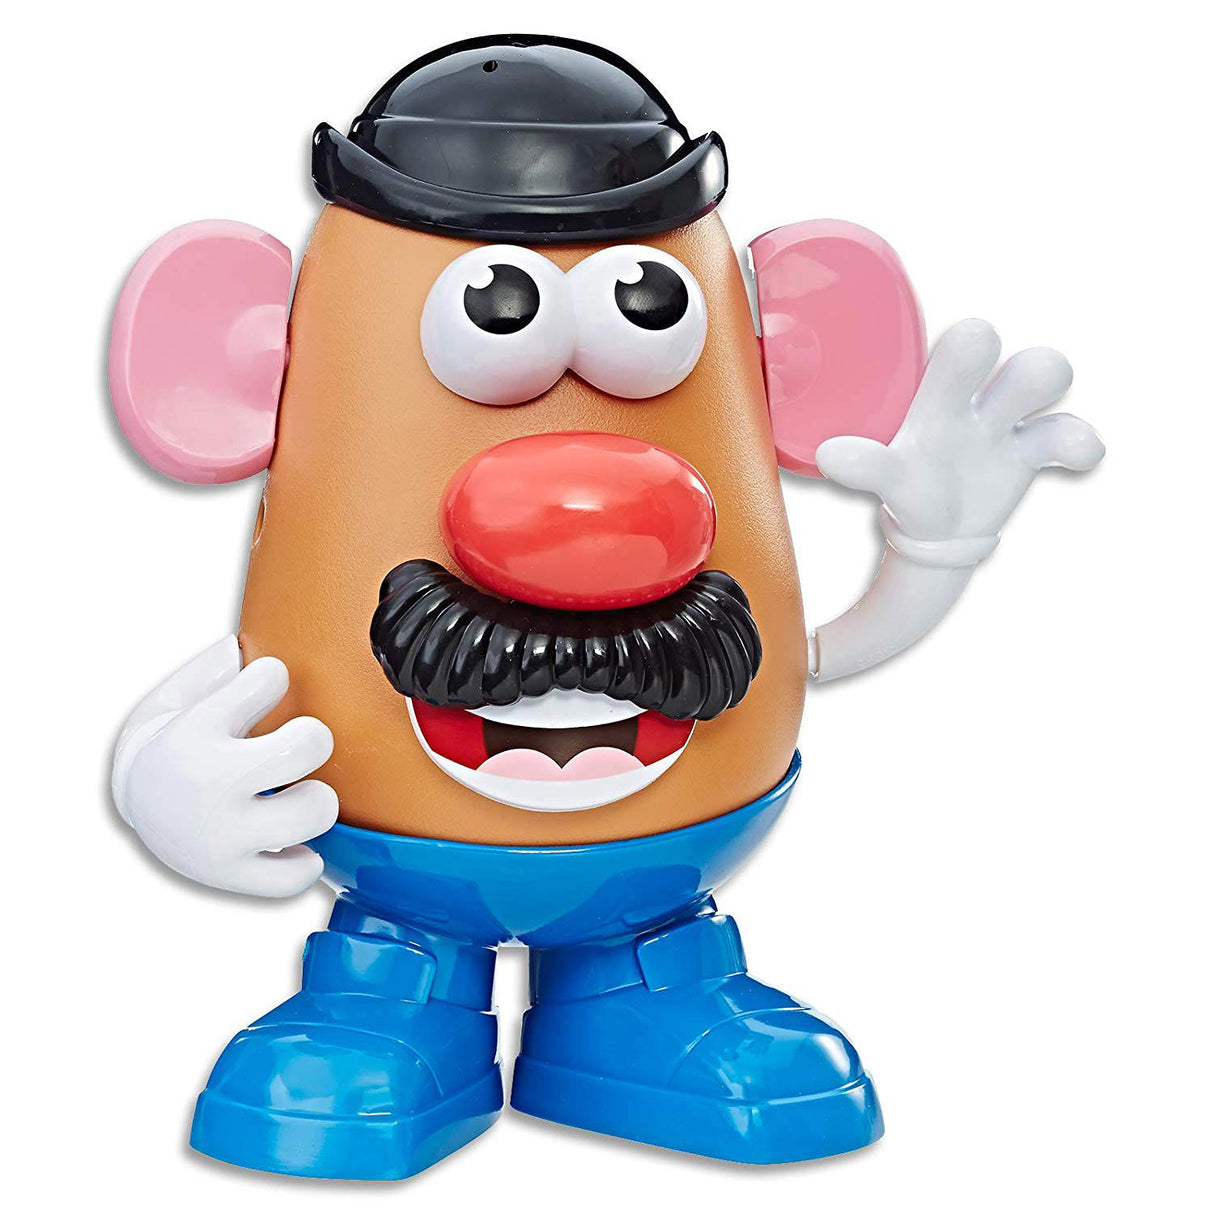 Hasbro Playskool Friends Mr. & Mrs Potato Head